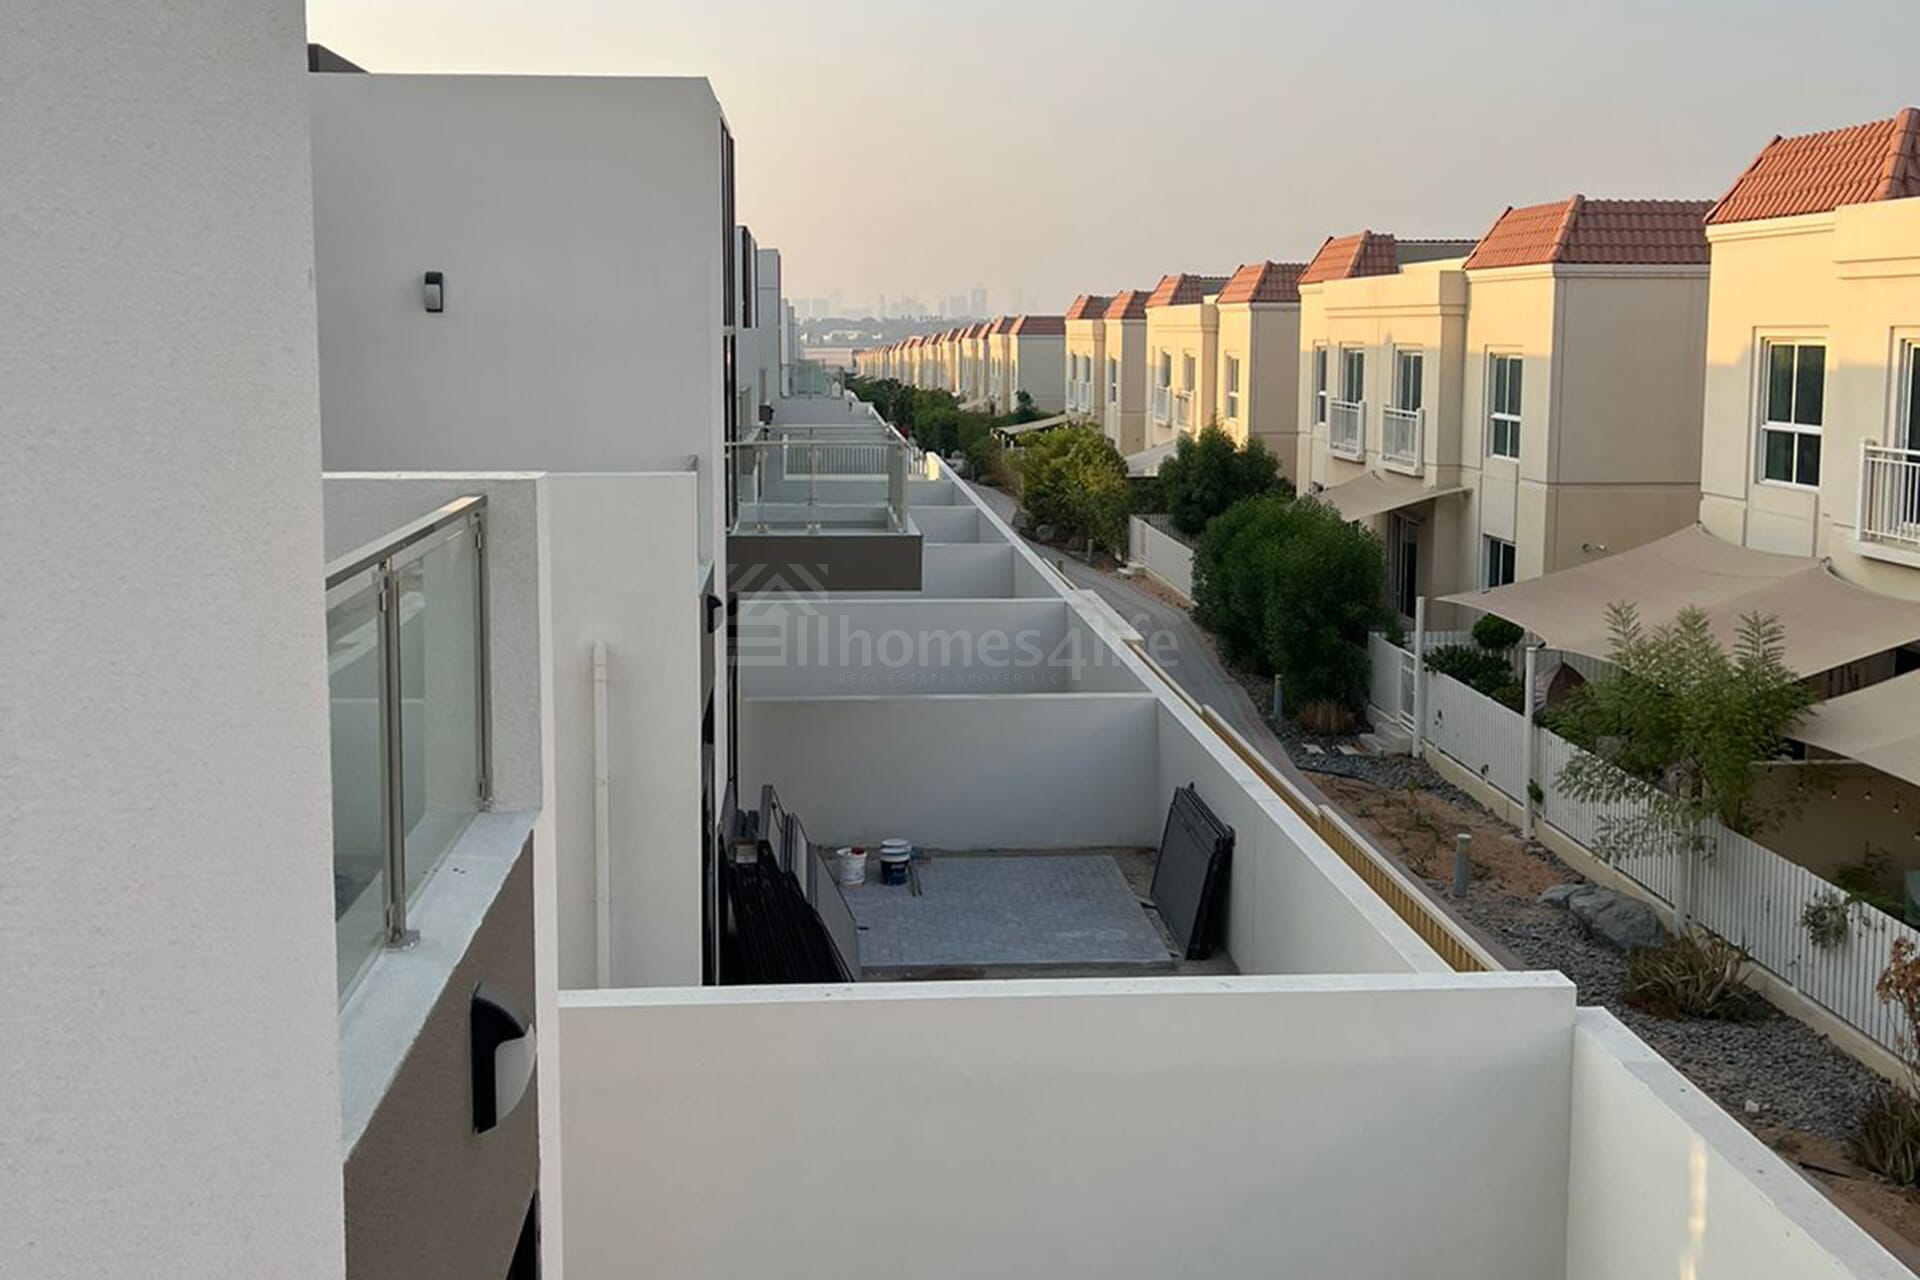 Real Estate_Villas for Rent_Mohammad Bin Rashid City